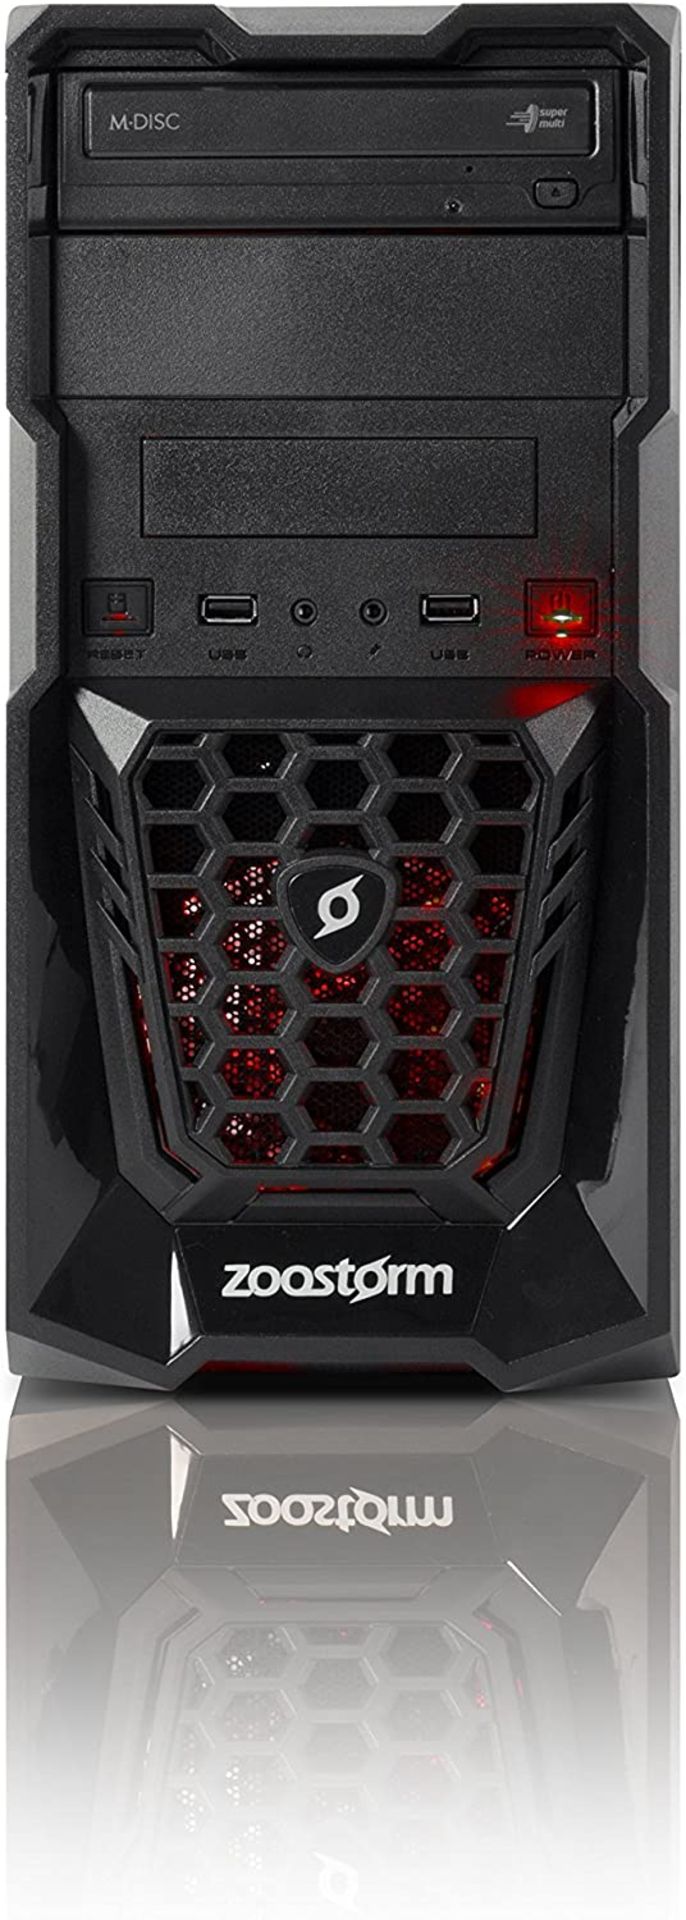 (69) 1 x Grade B - Zoostorm Quest Desktop PC - (Black) (AMD A8 7650K, 8 GB RAM, 1 TB HDD, Radeo... - Image 2 of 5